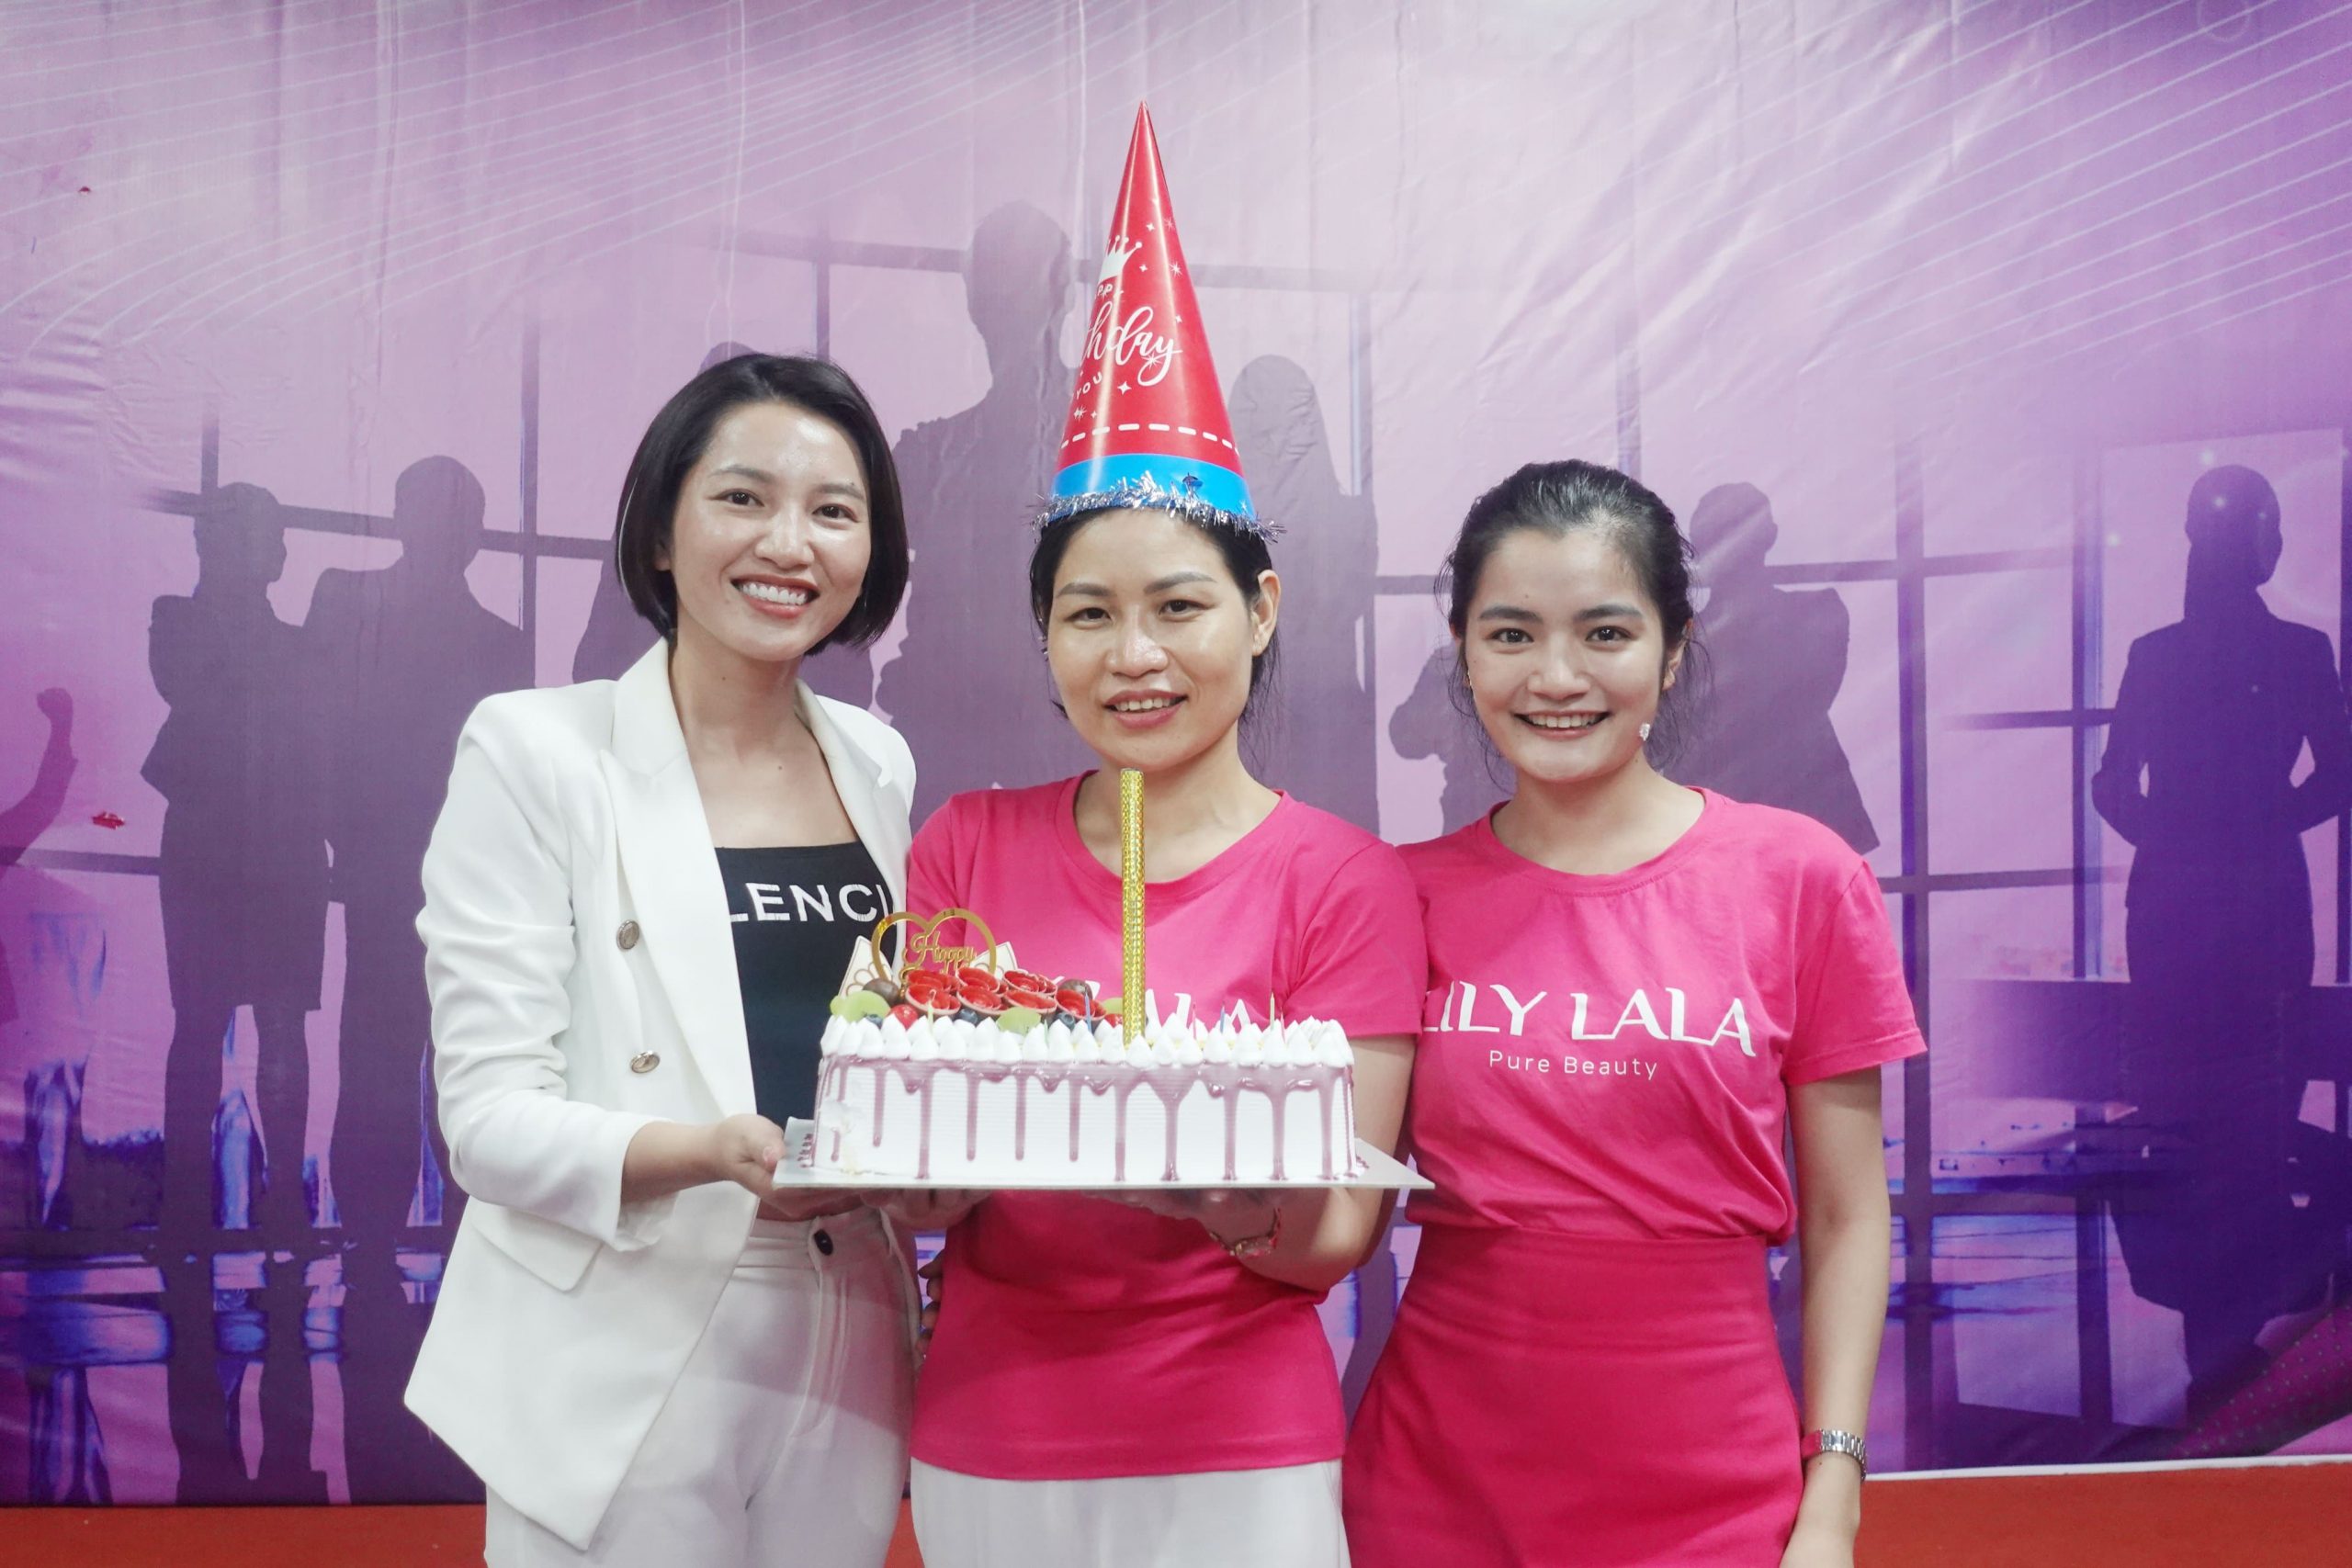 Chúc mừng sinh nhật chủ Spa Cerabe - đại lý kinh doanh Mỹ phẩm Hàn Quốc cao cấp Lily Lala Hà Thị Cửu trong khóa đào tạo One Leader Camp